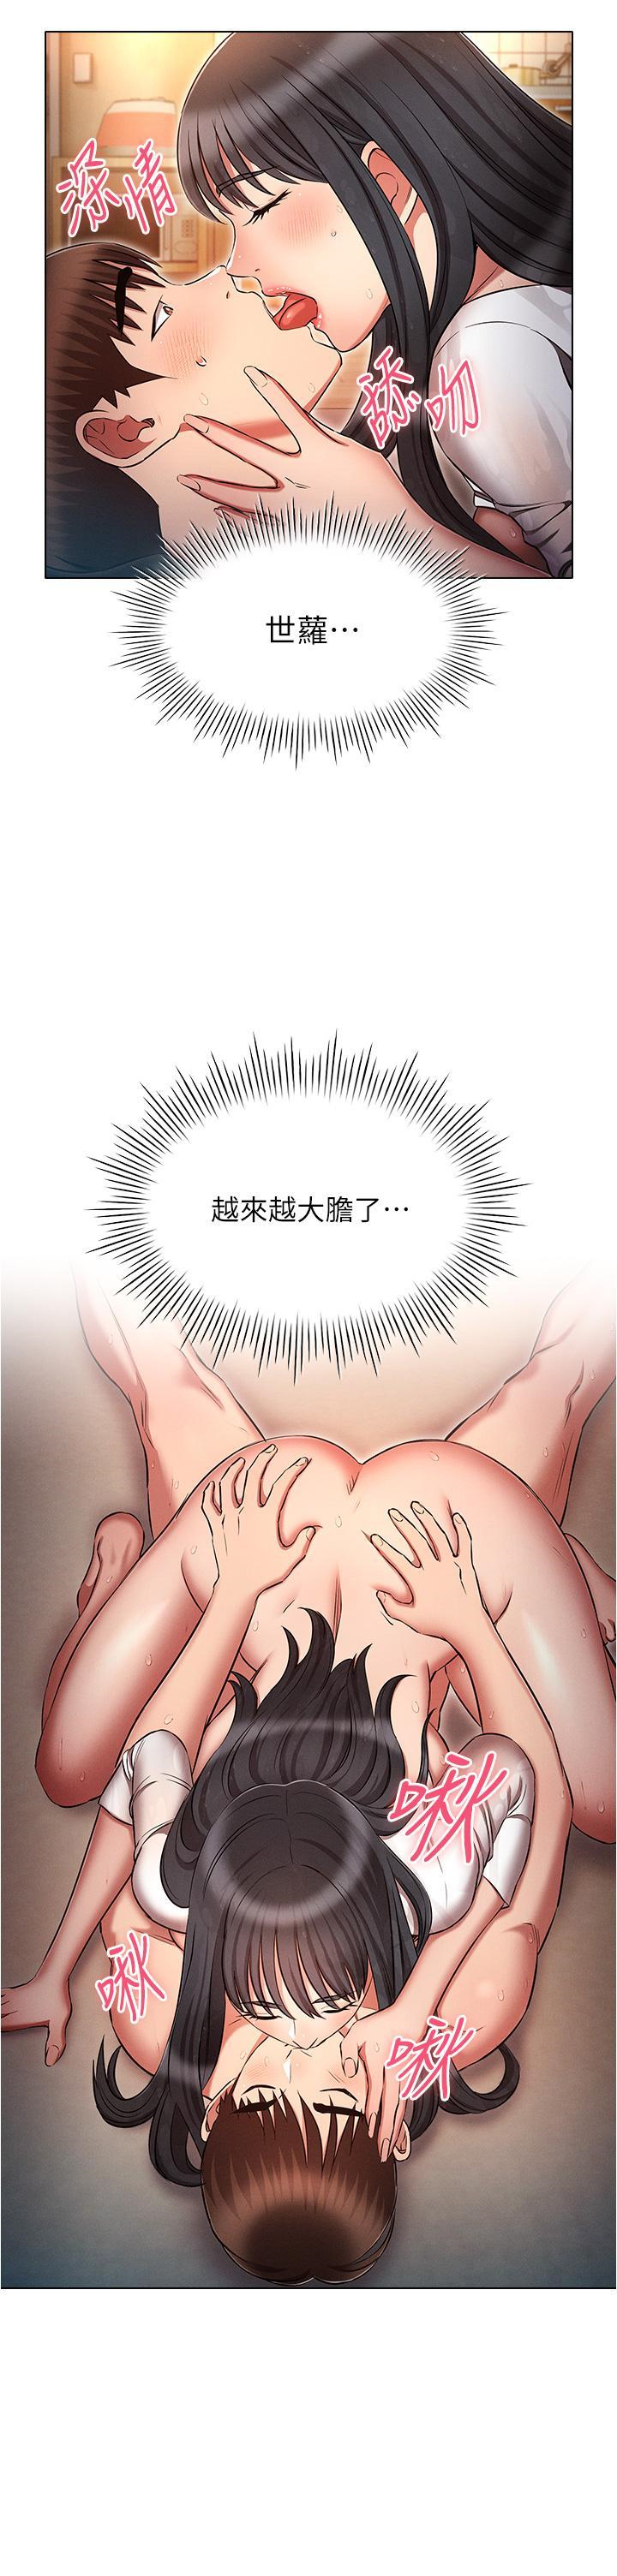 韩国污漫画 魯蛇的多重宇宙 第49话 高潮完用精液润润喉♥ 9